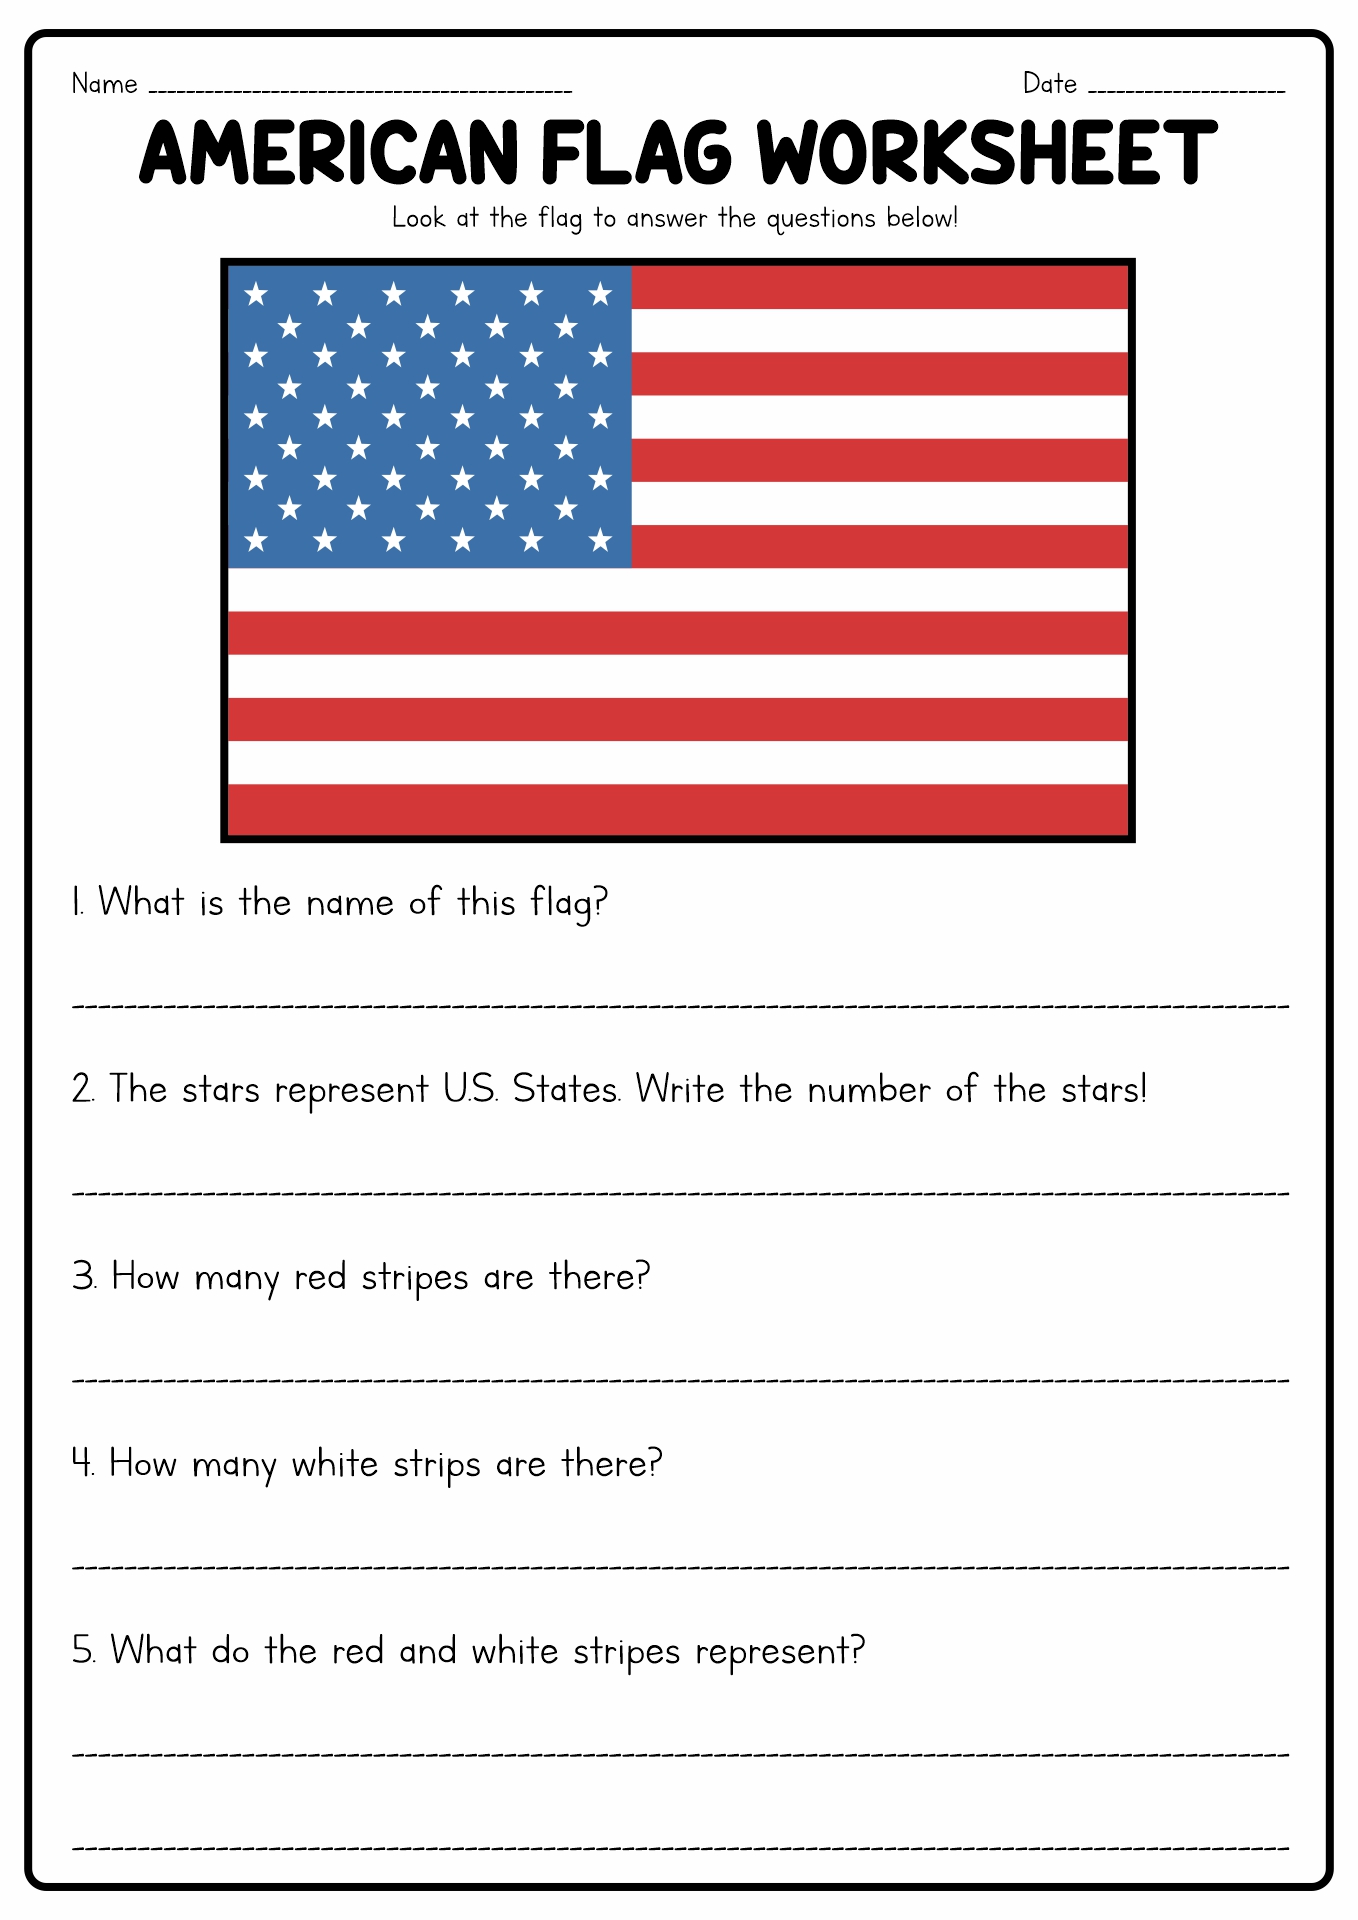 American Flag Worksheets for Kids Image